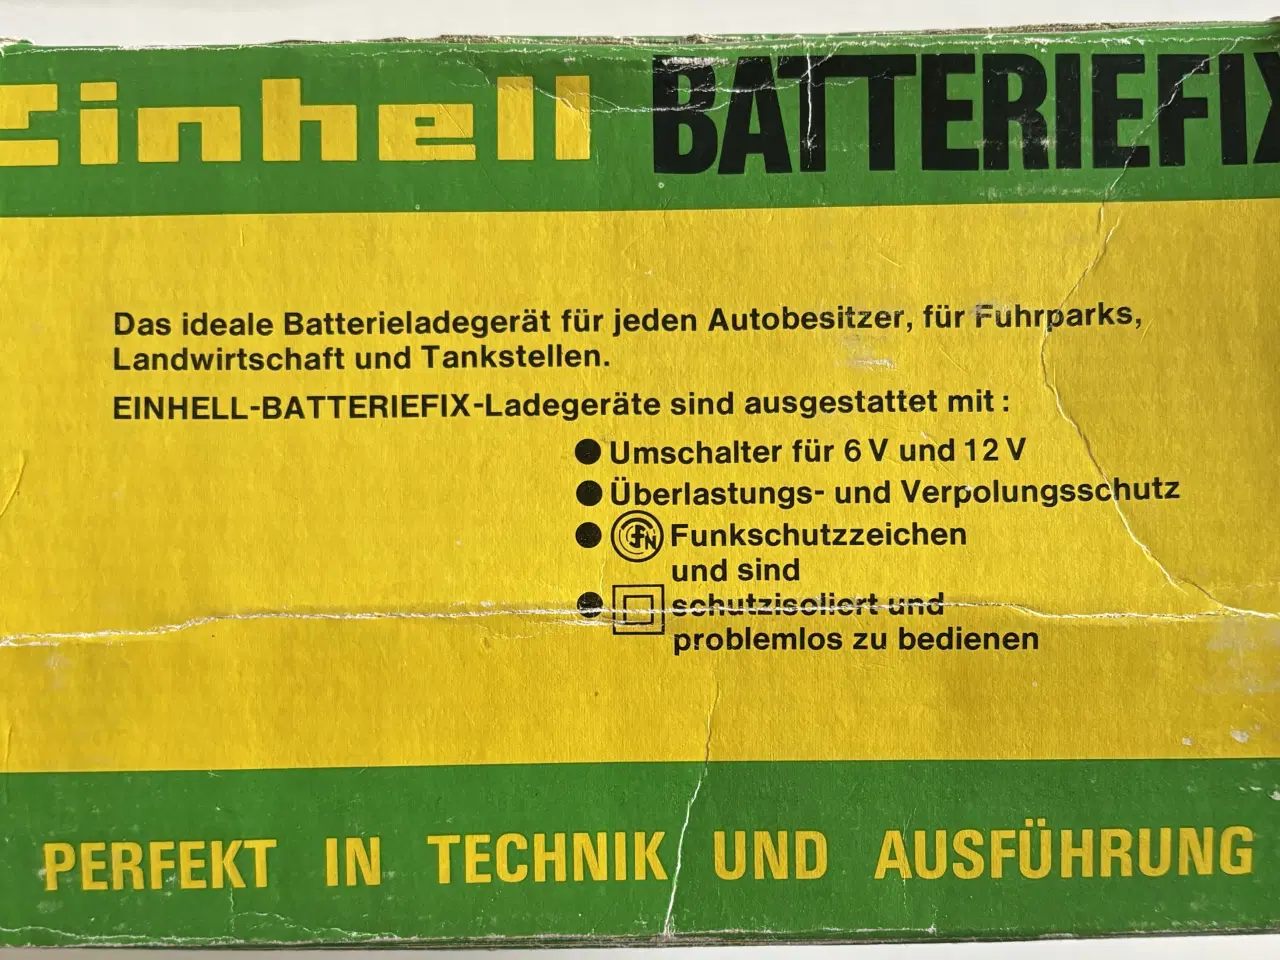 Billede 3 - Batterilader, Einhell batteriefix